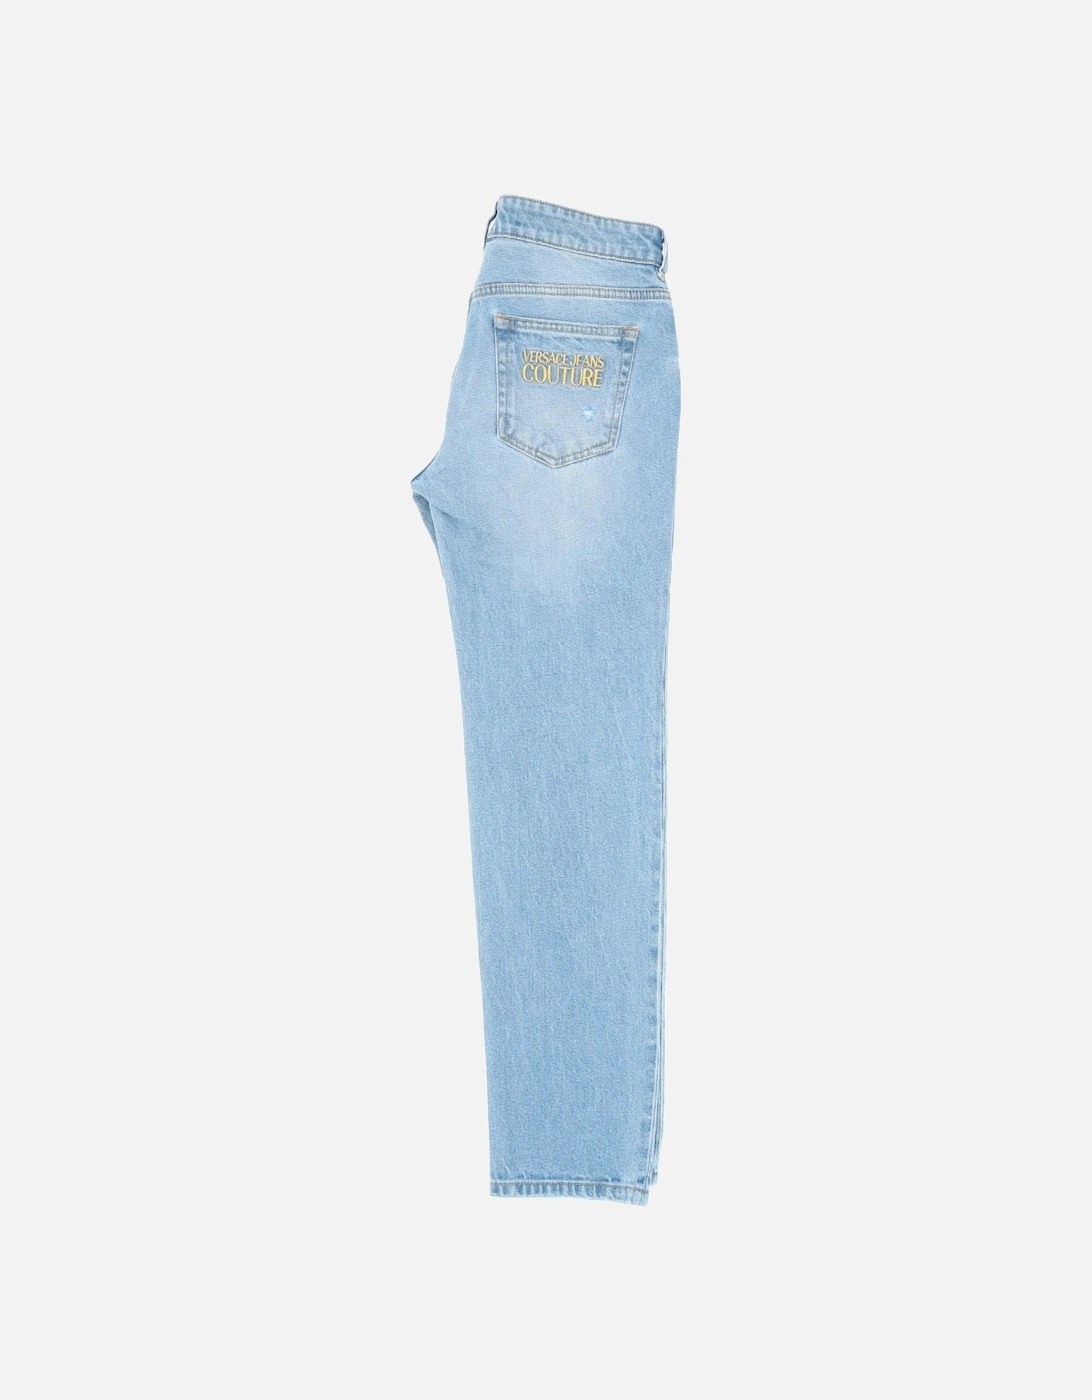 Embroidered Pocket Light Jean